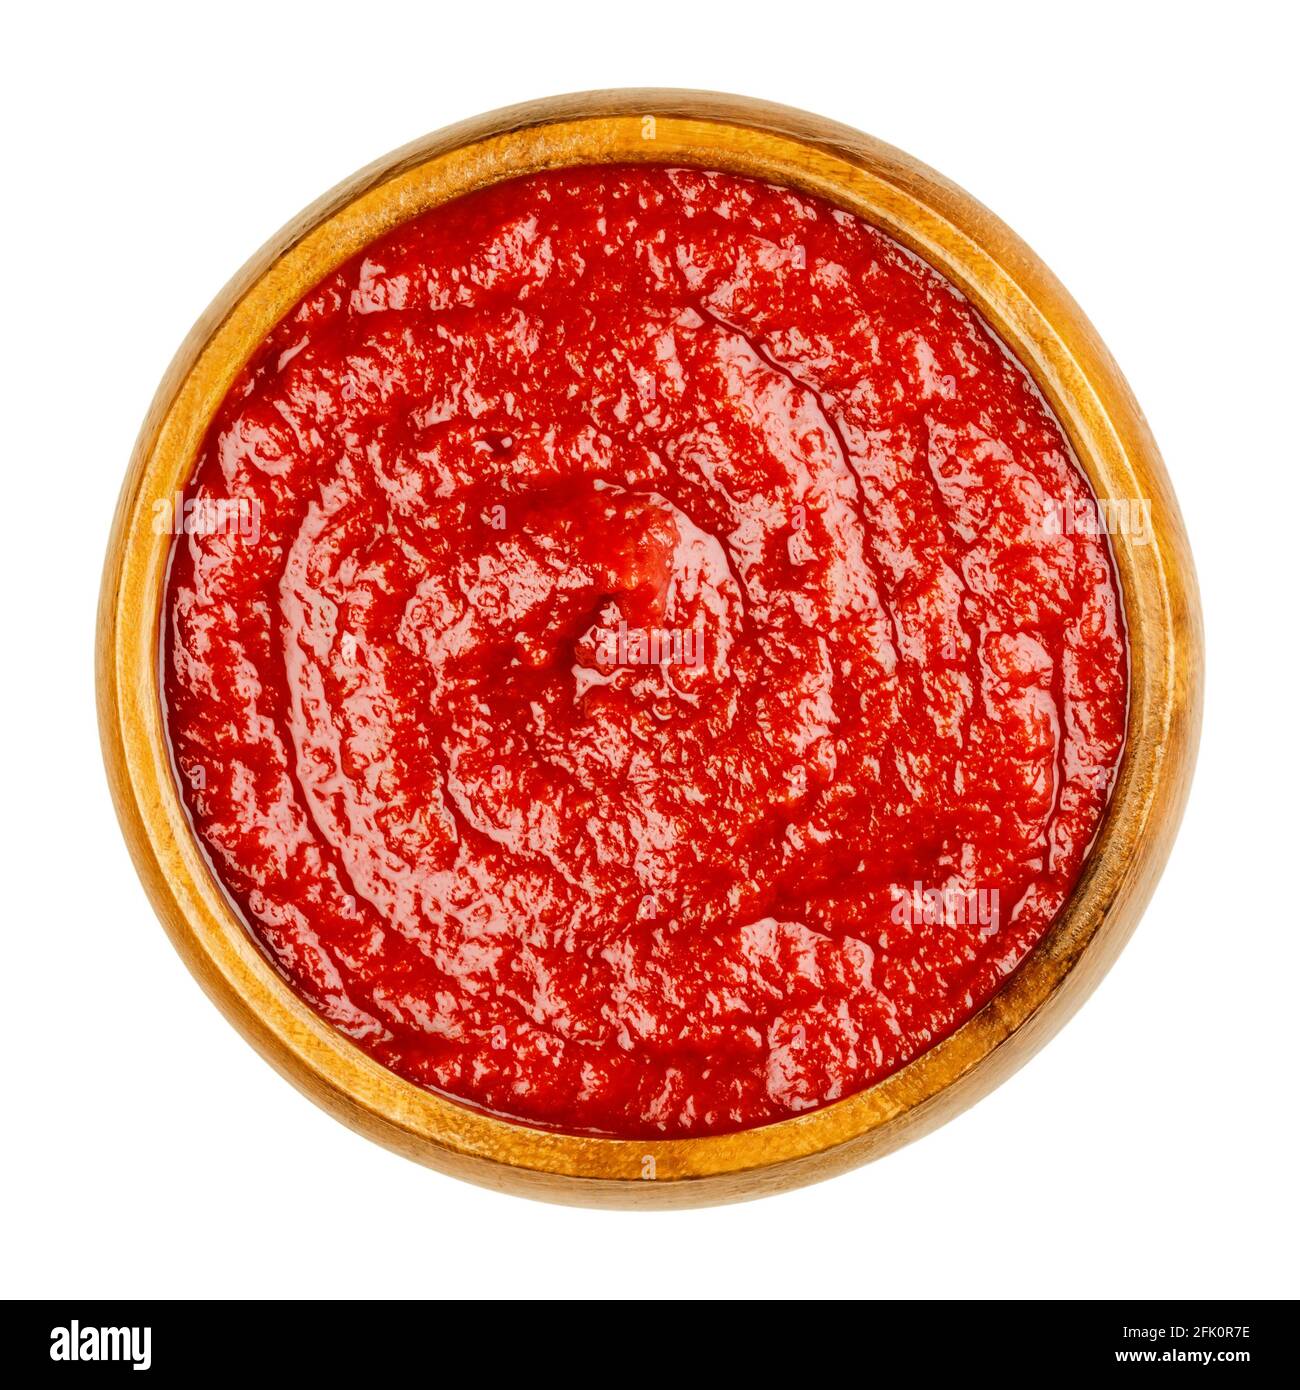 Ketchup aux tomates maison dans un bol en bois. Condiment de table rouge doux et acidulé, fait à partir de pâte de tomate, de sucre, de vinaigre et d'assaisonnements. Banque D'Images